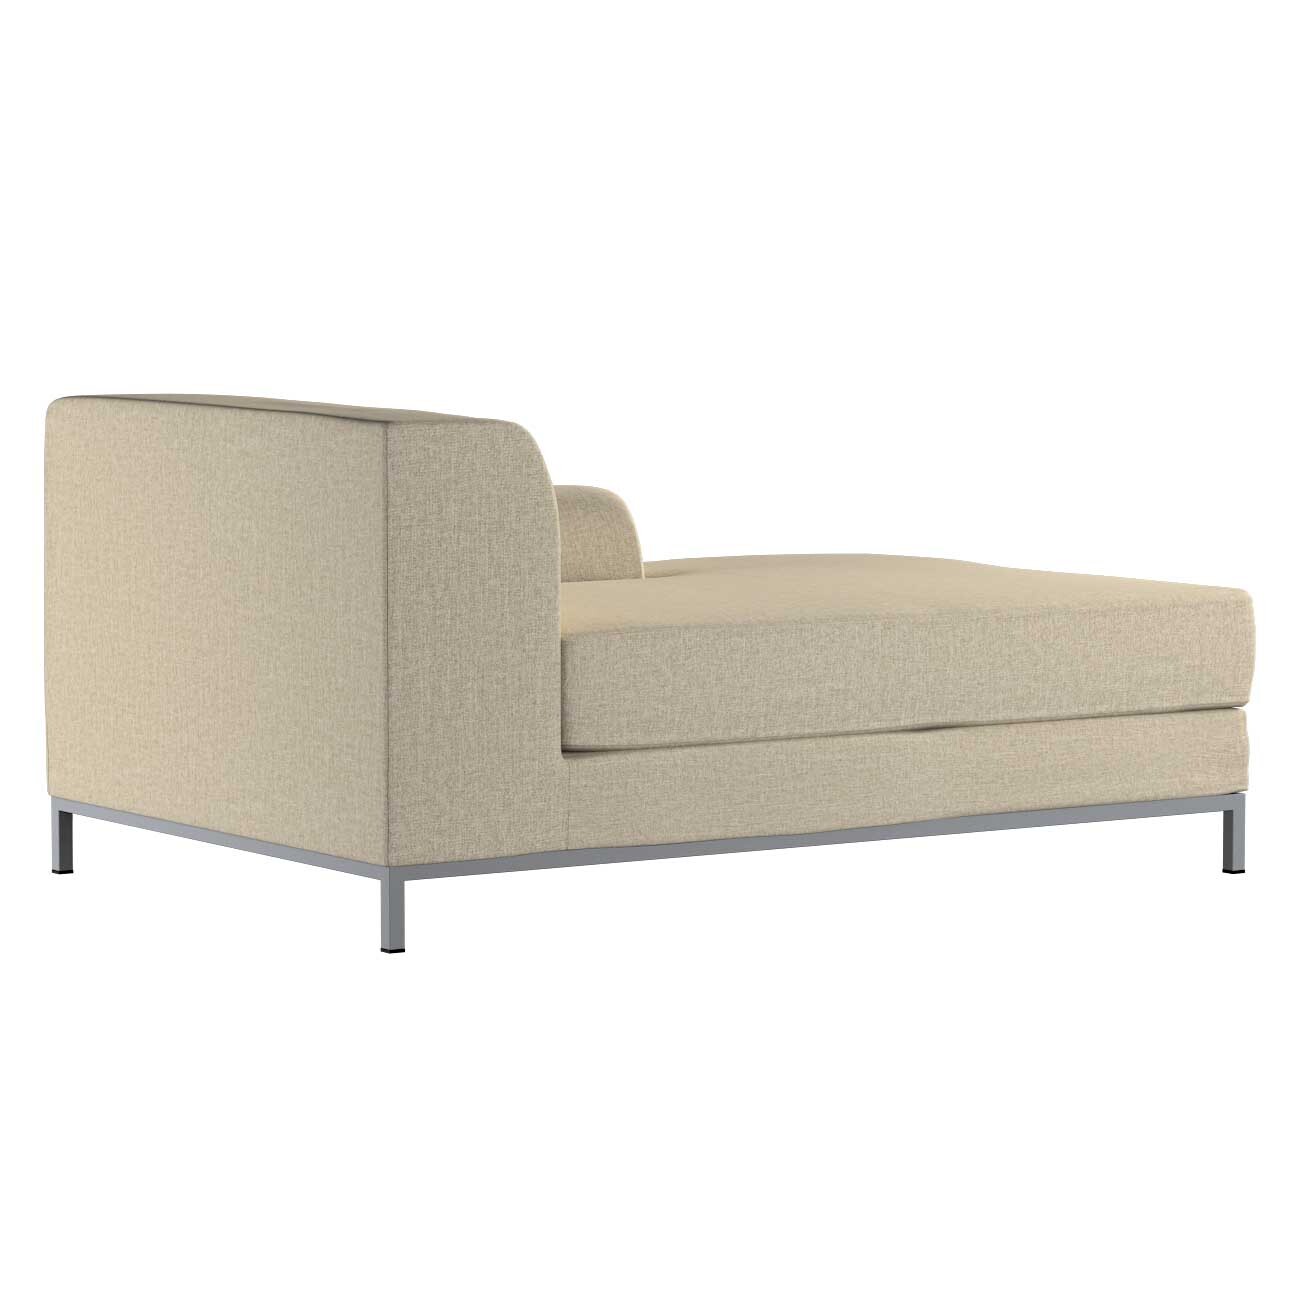 Bezug für Kramfors Sofa Recamiere rechts, beige- grau, Bezug für Recamiere günstig online kaufen